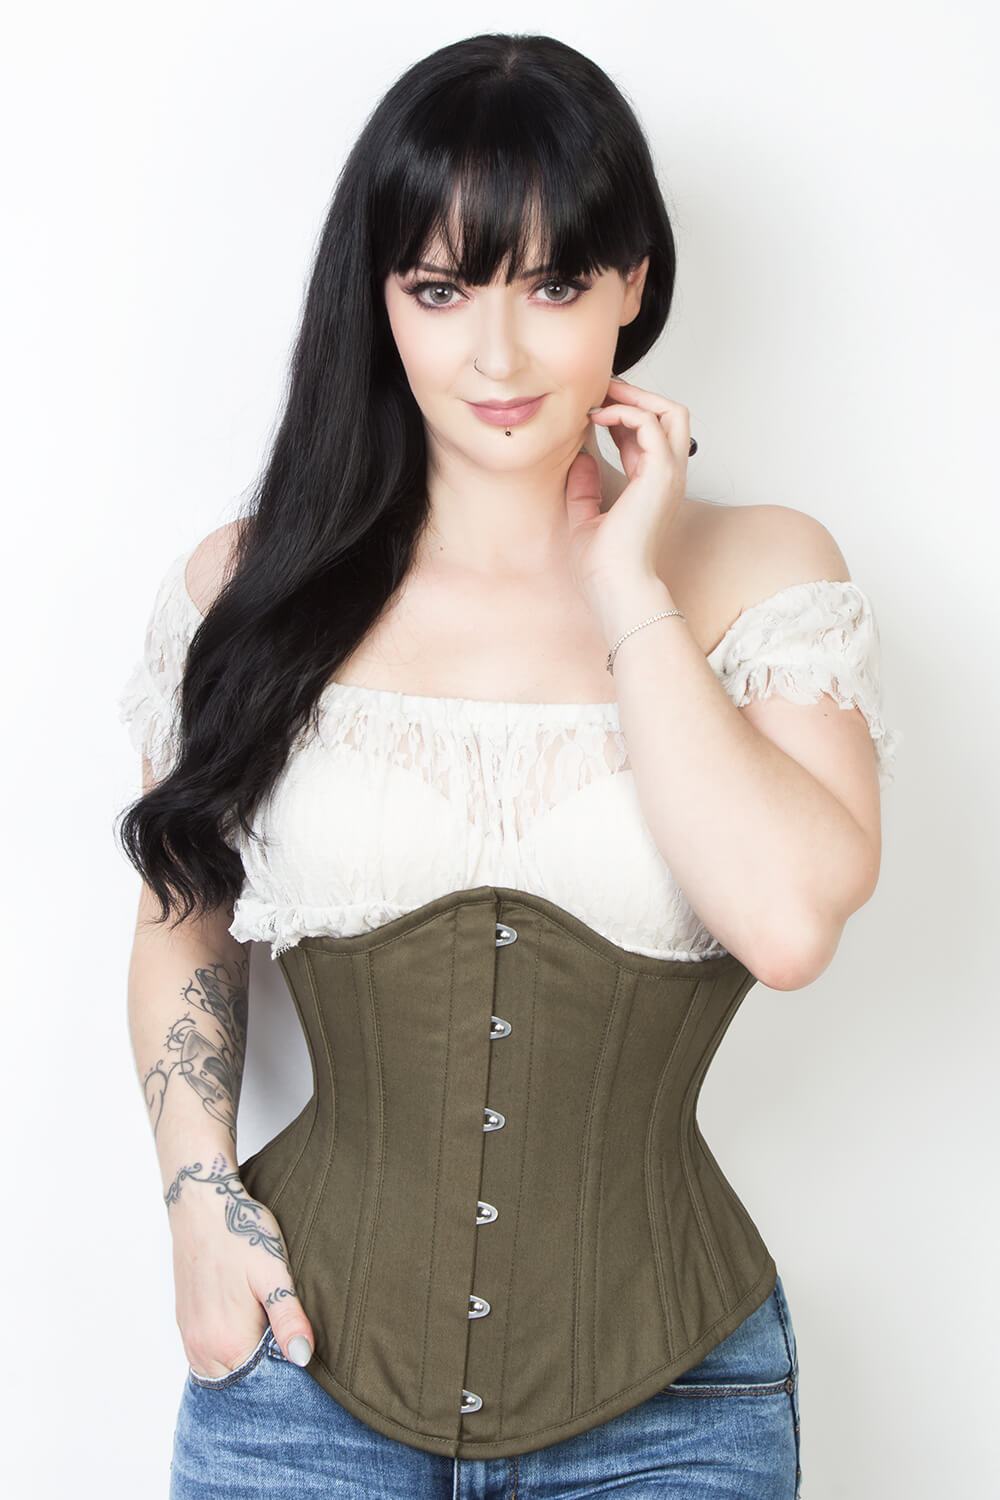 https://www.corsetdeal.com/cdn/shop/products/EL-333_F_Elyzza_London_Corset_Corsetdeal_Bespoke_Corset_waist_training_corset_6125436b-e56b-4744-8fe5-42fadbf77653.jpg?v=1555395585